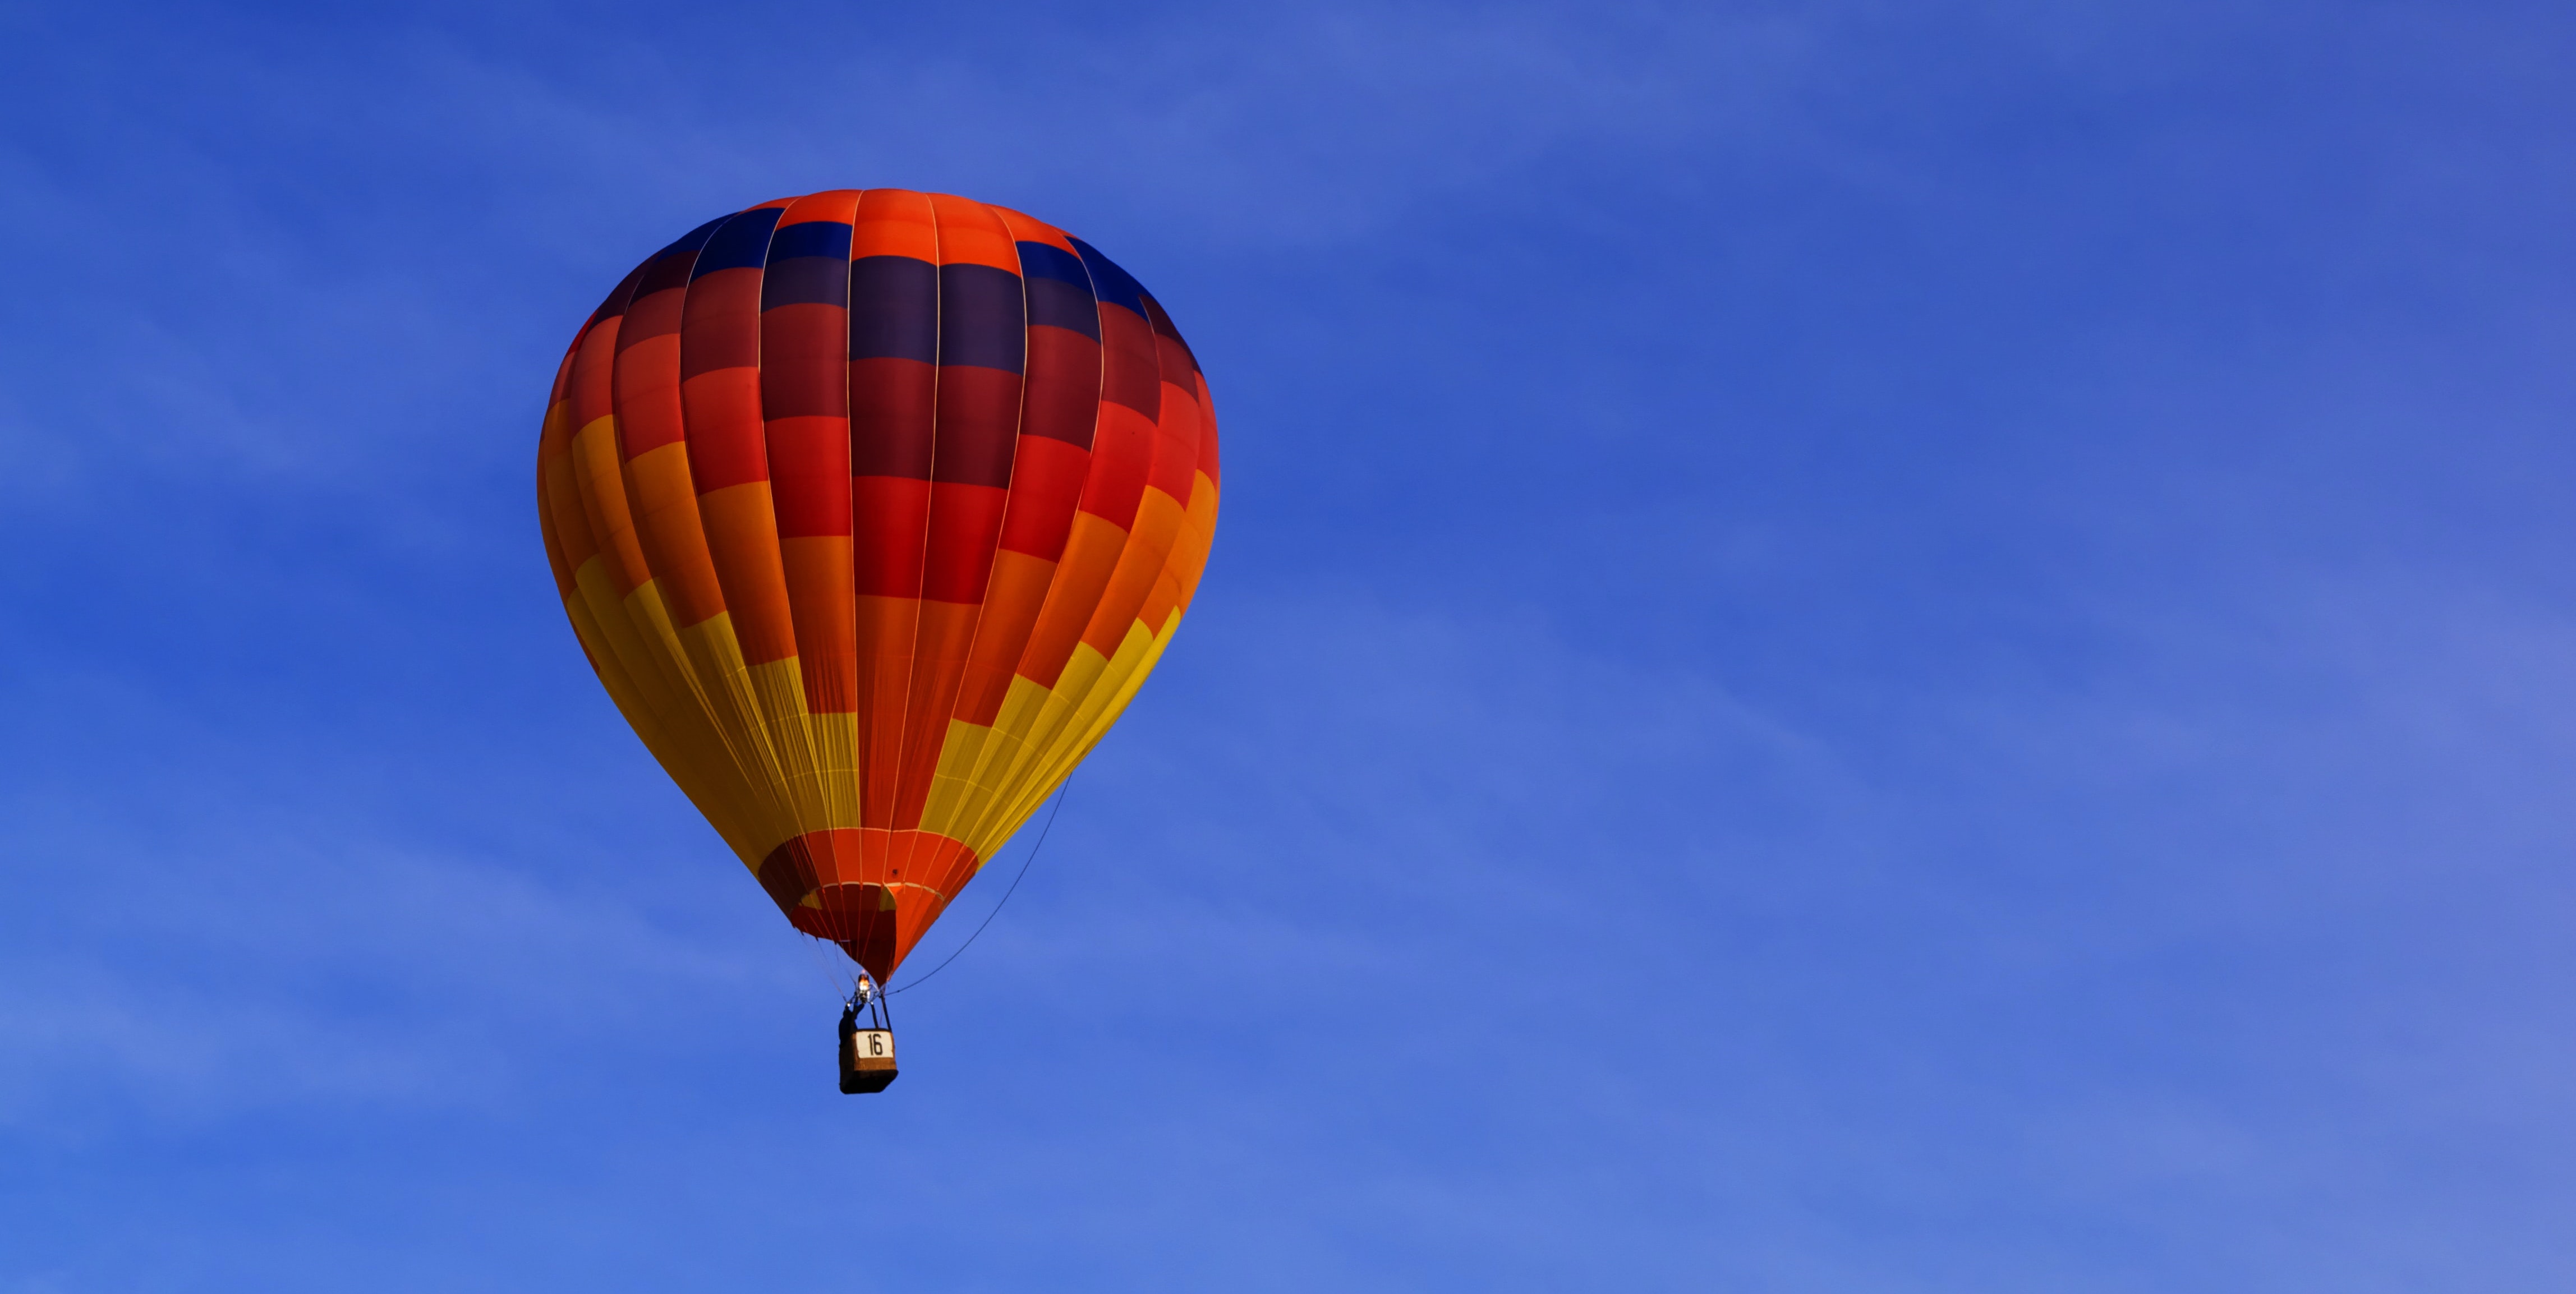 Hot air ballon in the sky